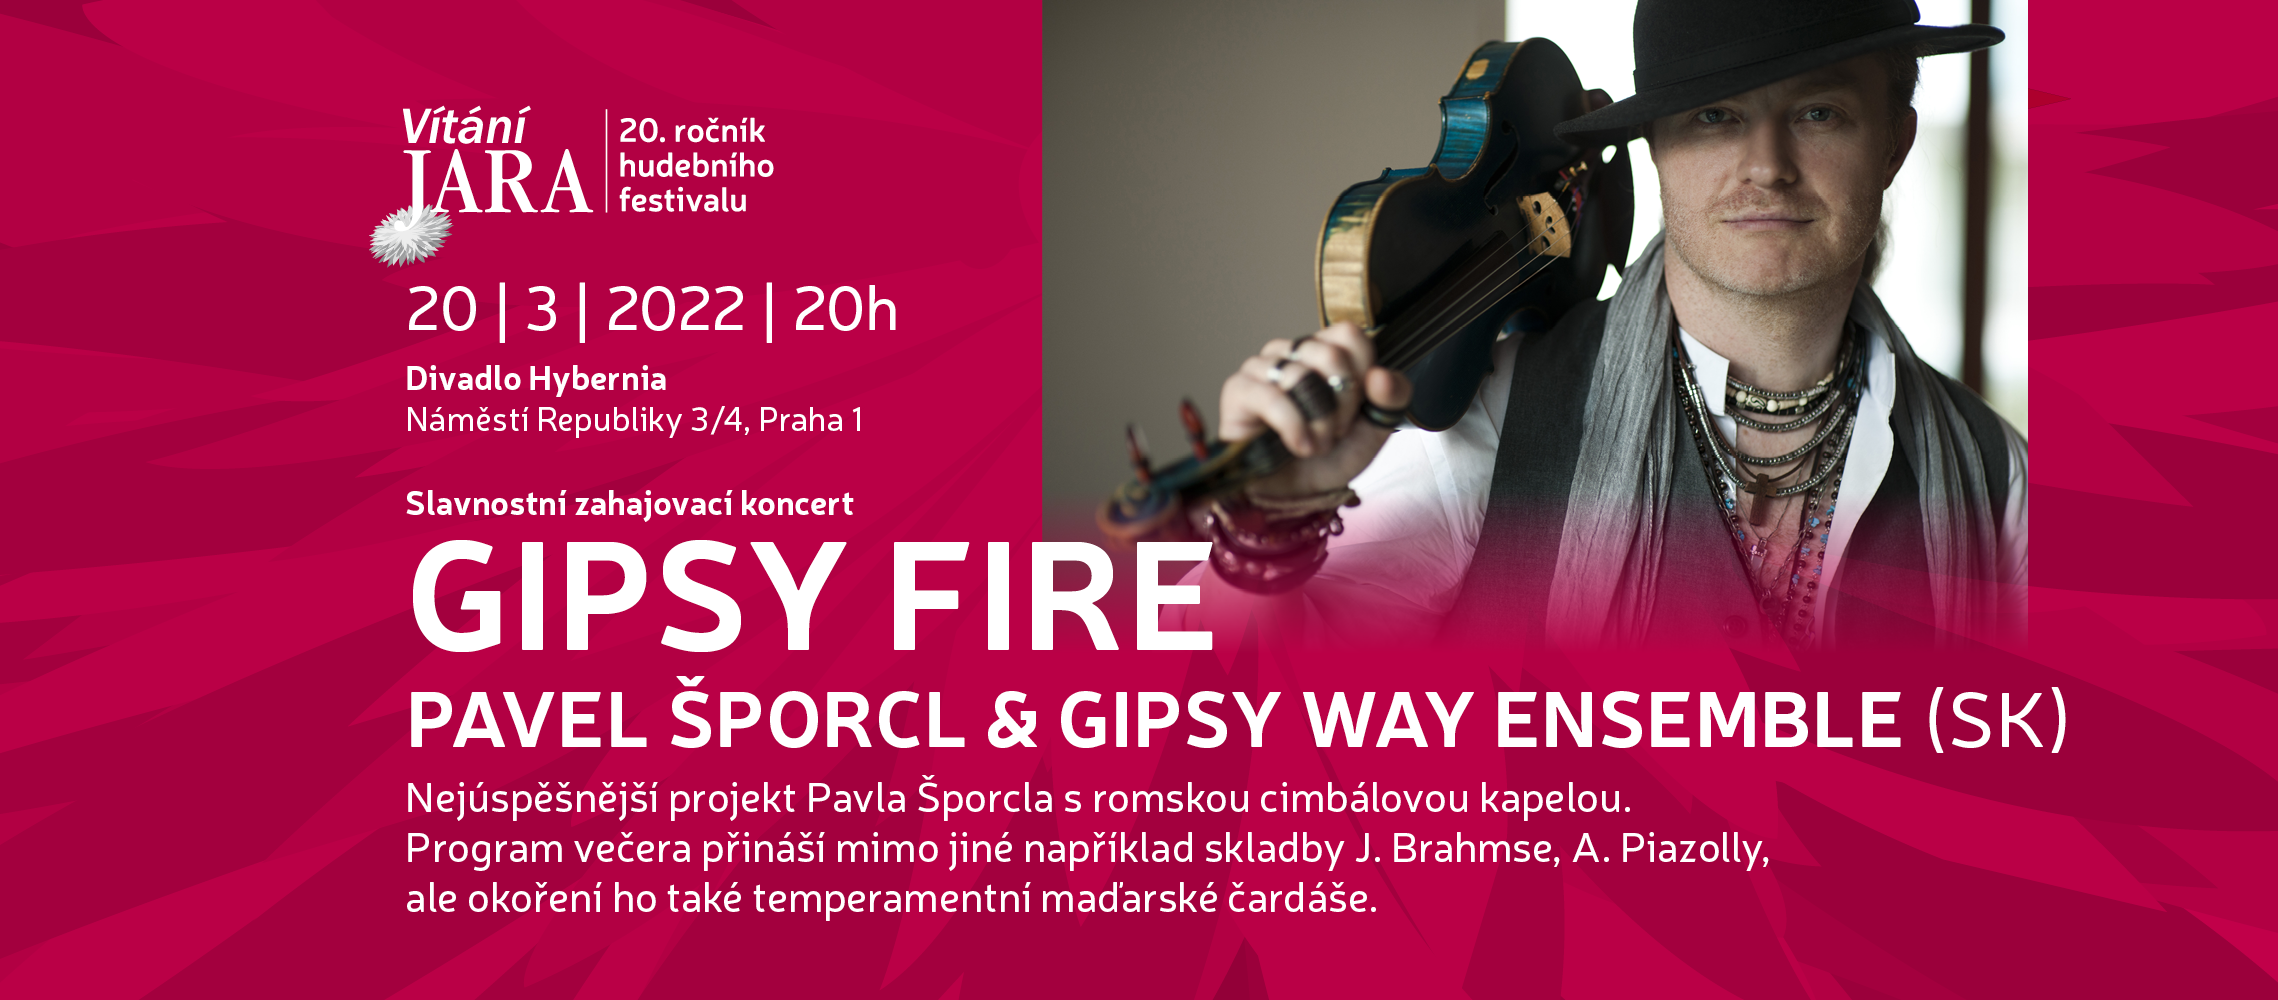  Gipsy Fire – Pavel Šporcl & Gipsy Way Ensemble